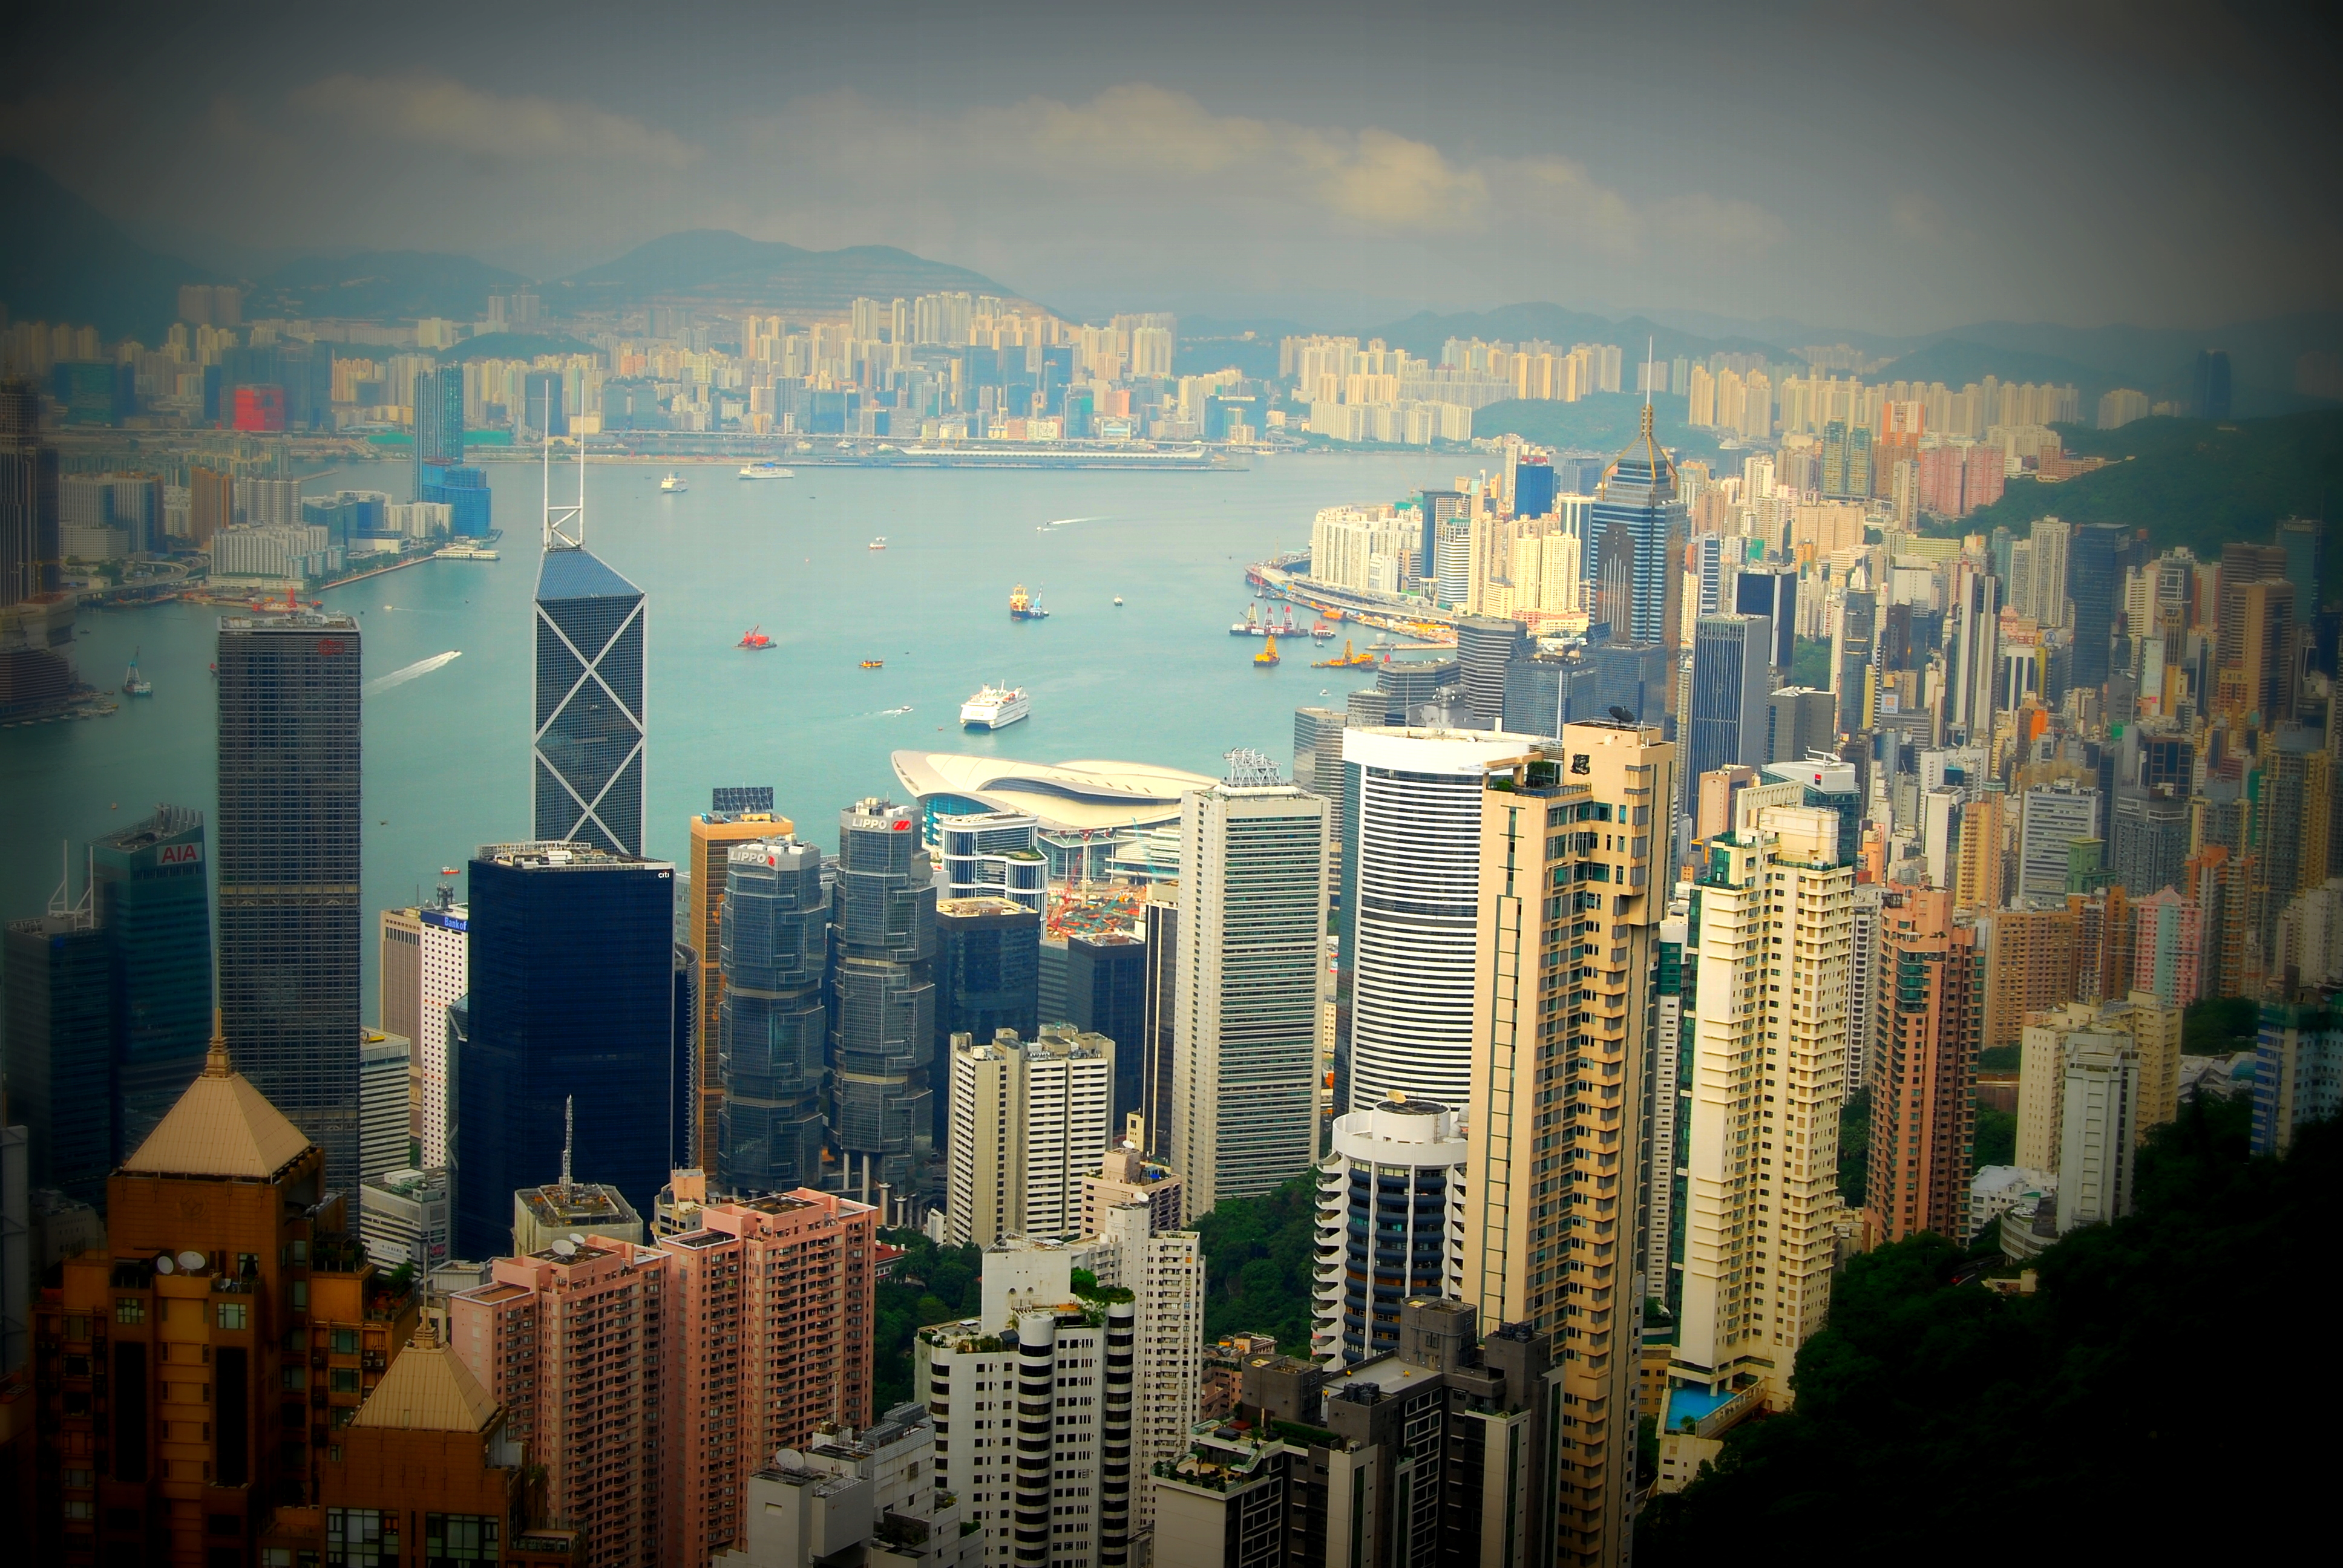 Небостъргачи, търговия, финансови борси. През Хонконг минава 50% от китайския износ. Най-важното за посетителите е, че той е мултикултурен център.